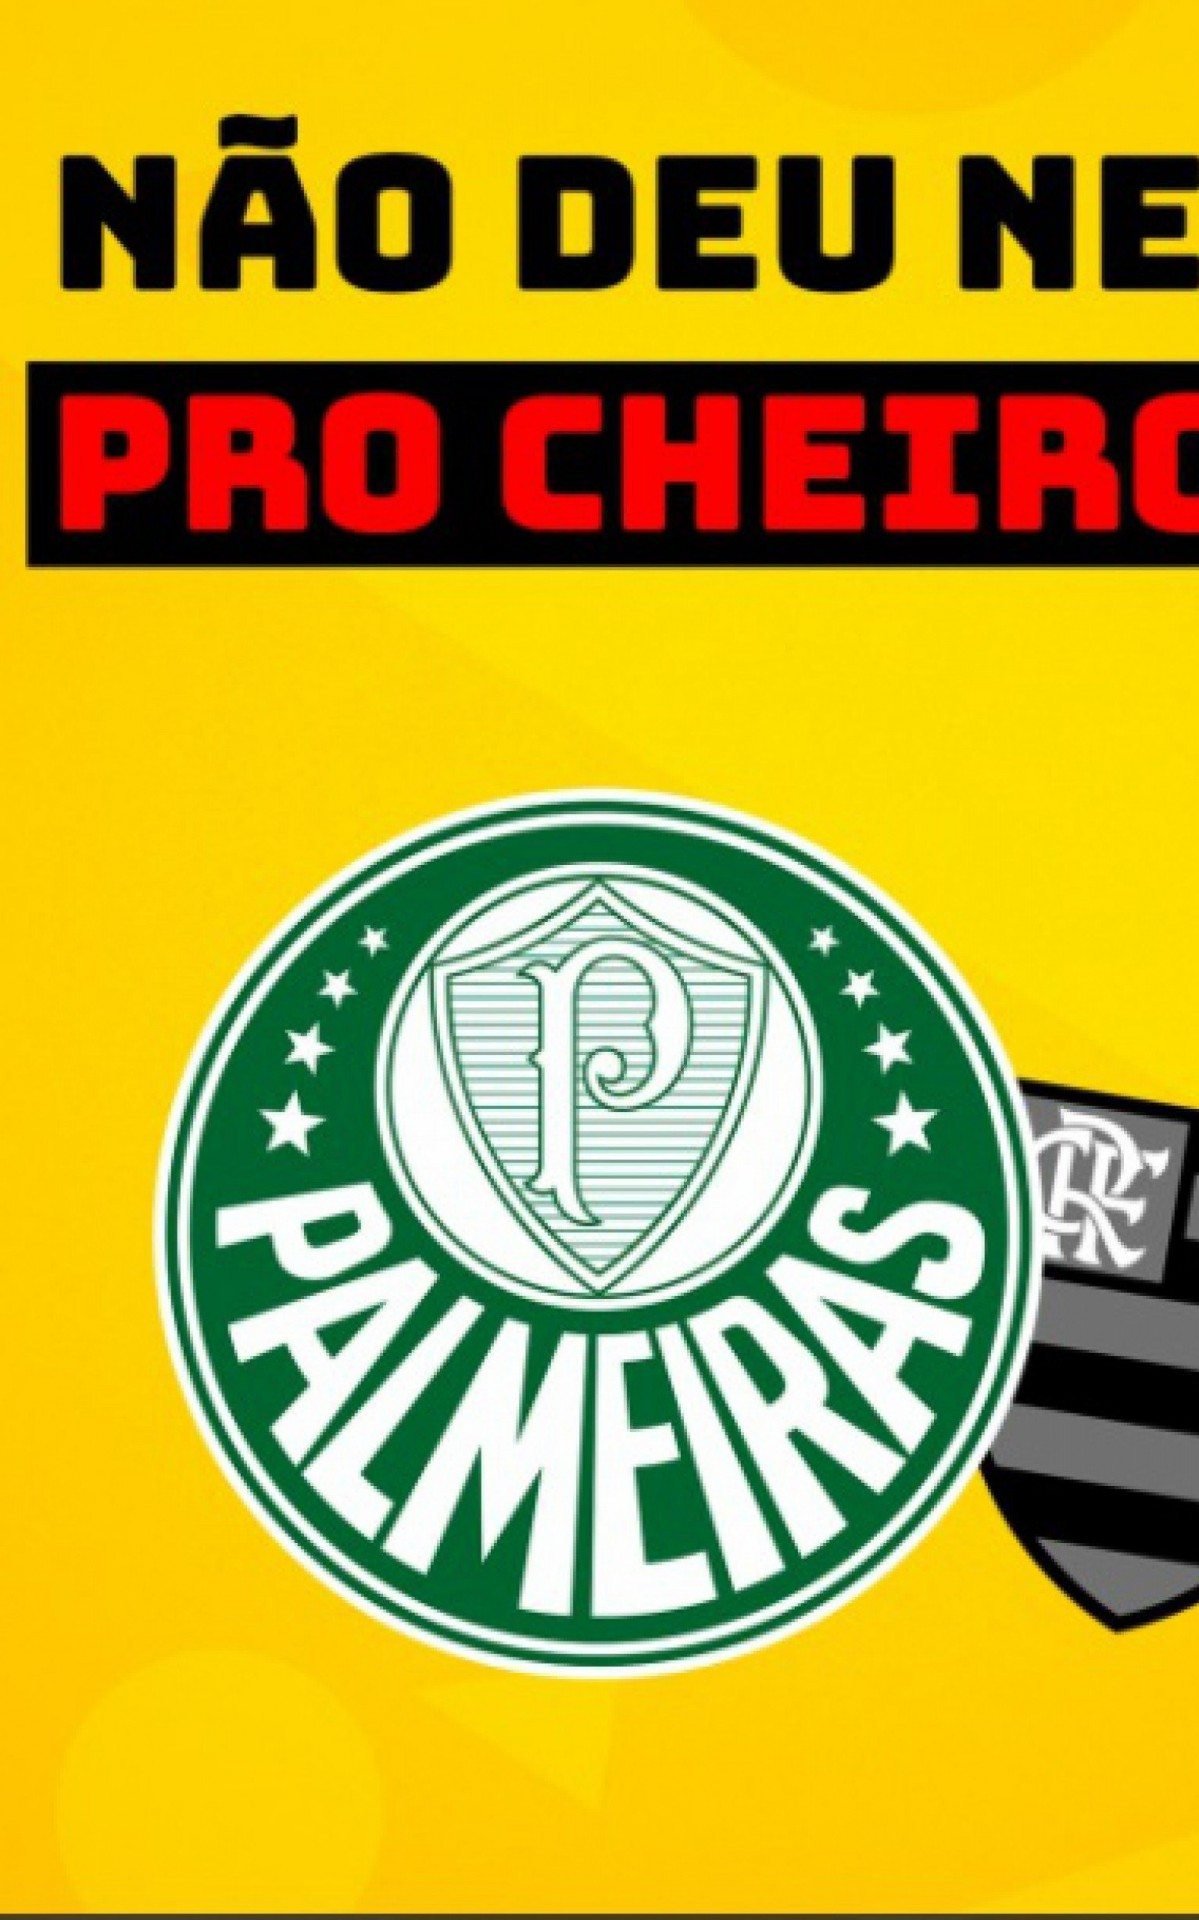 Palmeiras: classificação para a final da Libertadores gera memes